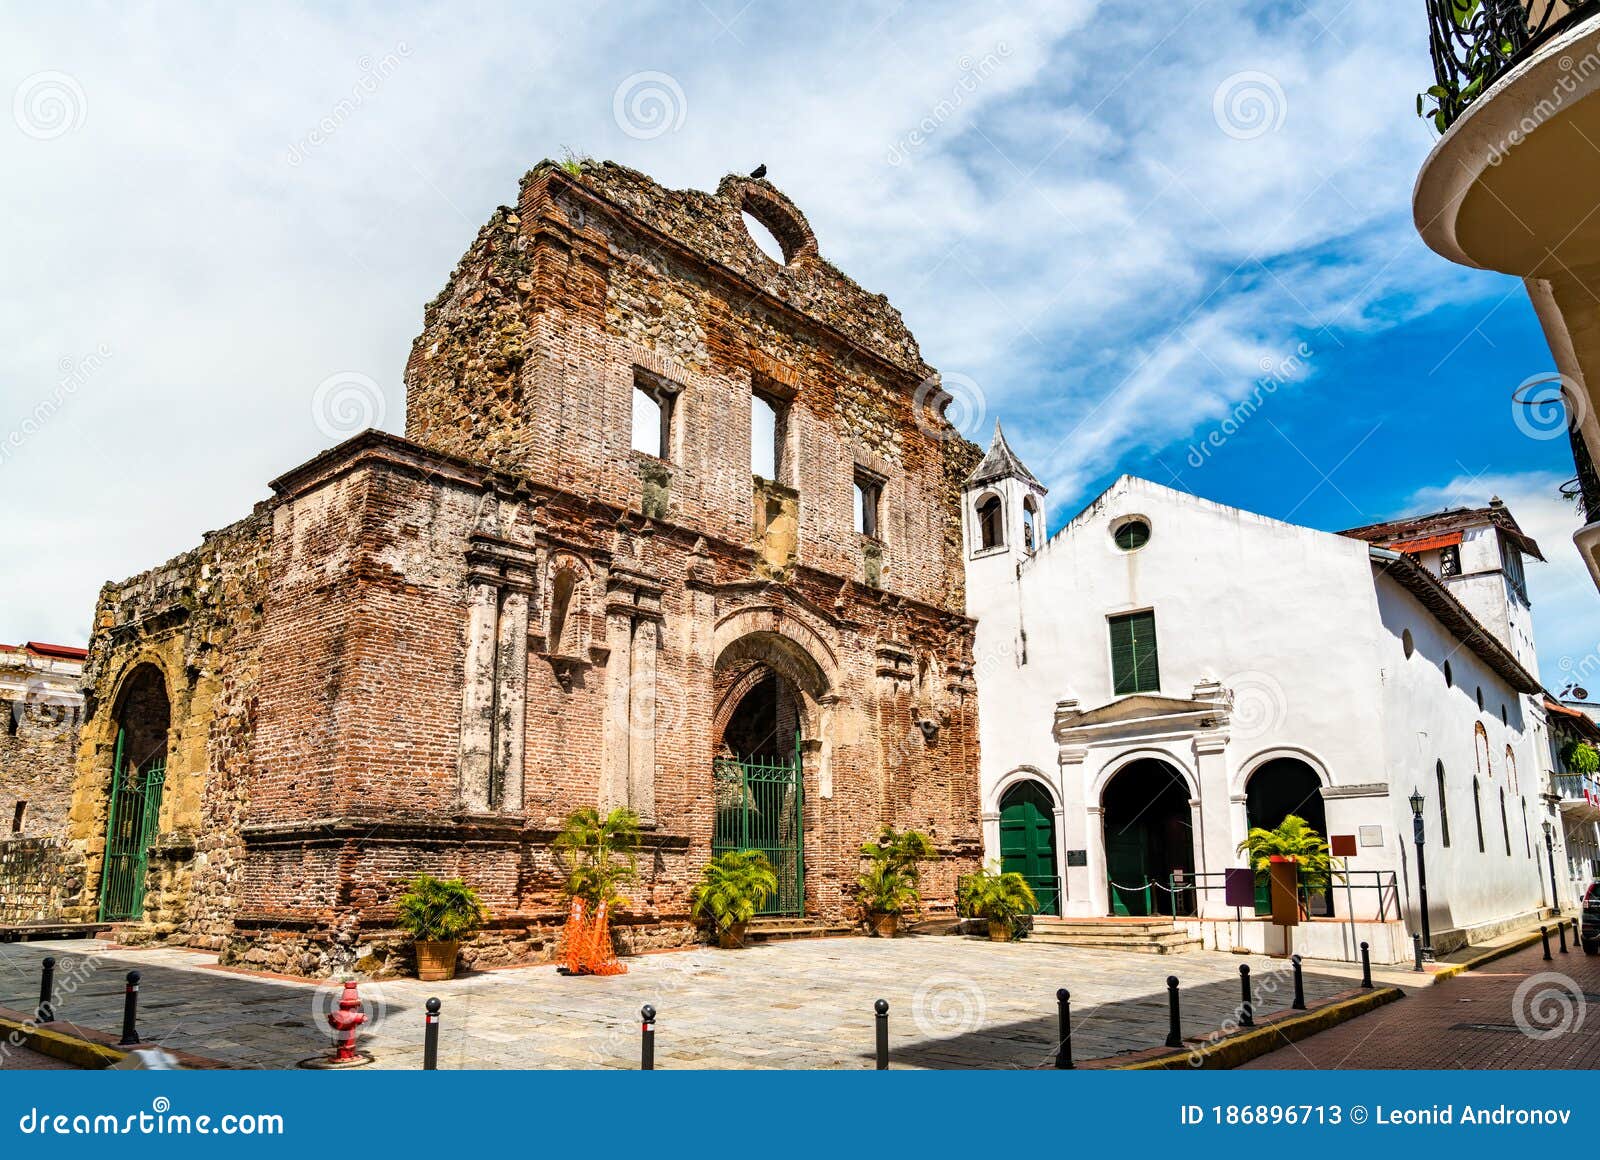 convent of santo domingo at casco viejo in panama city